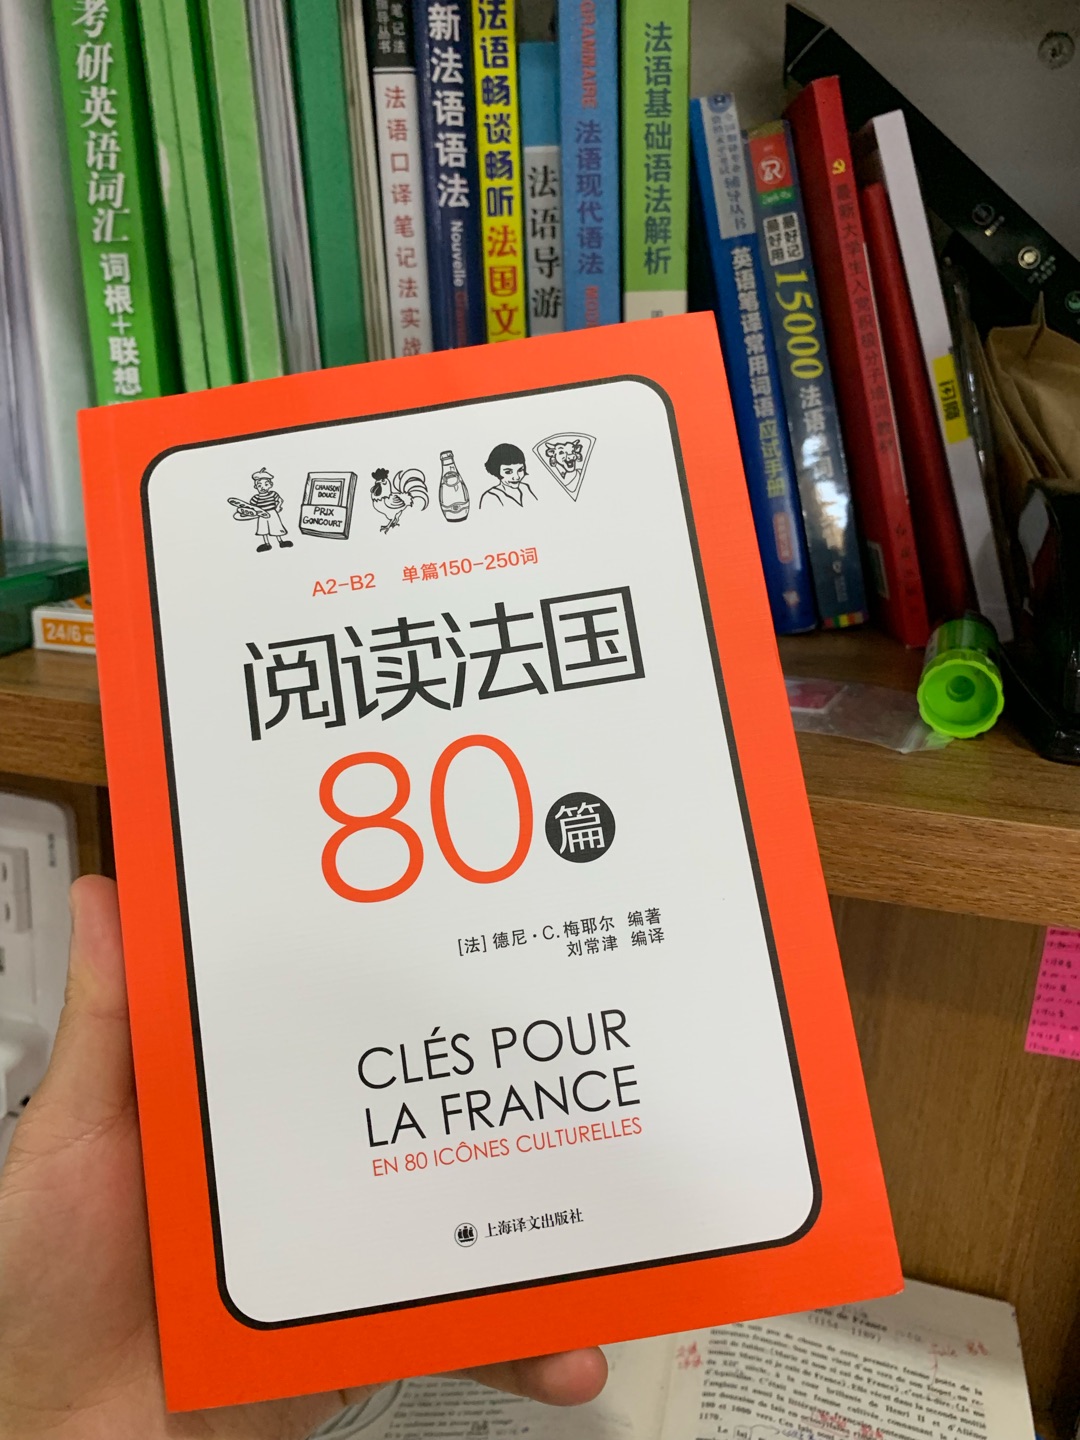 很不错啊，就是有点贵呀，不过还好，内容很丰富，这家店还行吧，就是书籍不全，可以多进一些小语种的书籍吗，很需要呀，法语法语法语法语法语法语法语法语法语法语法语法语法语法语法语法语法语法语法语法语法语法语法语